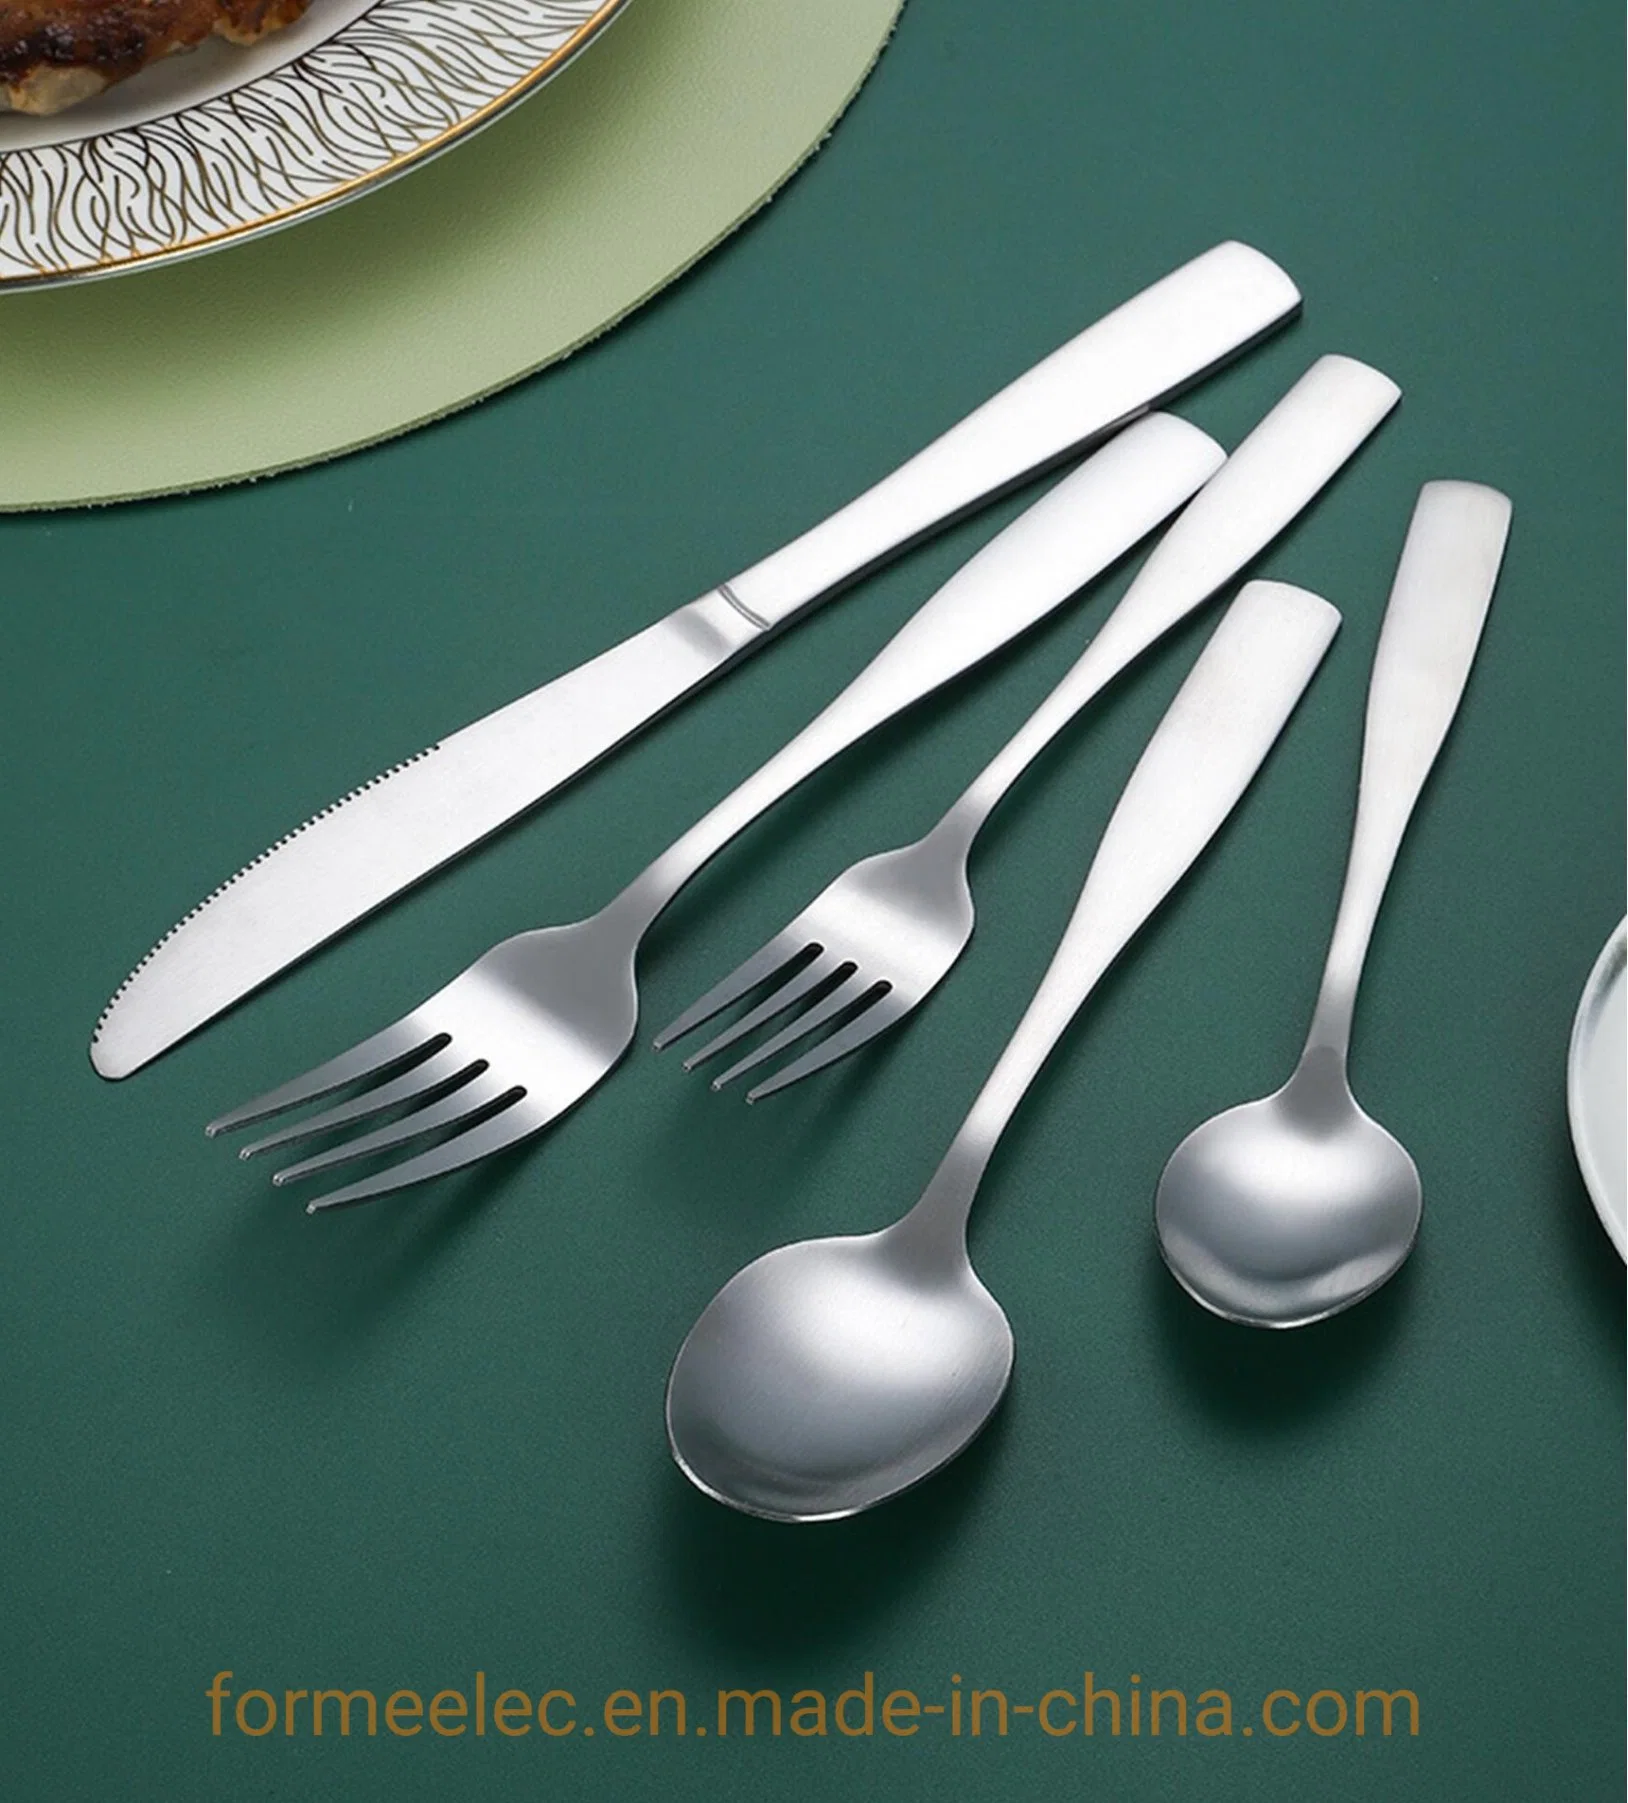 Flatware Eating Utensils Dinner Fork Steak Knife Soup Spoon Tableware Set Cutlery